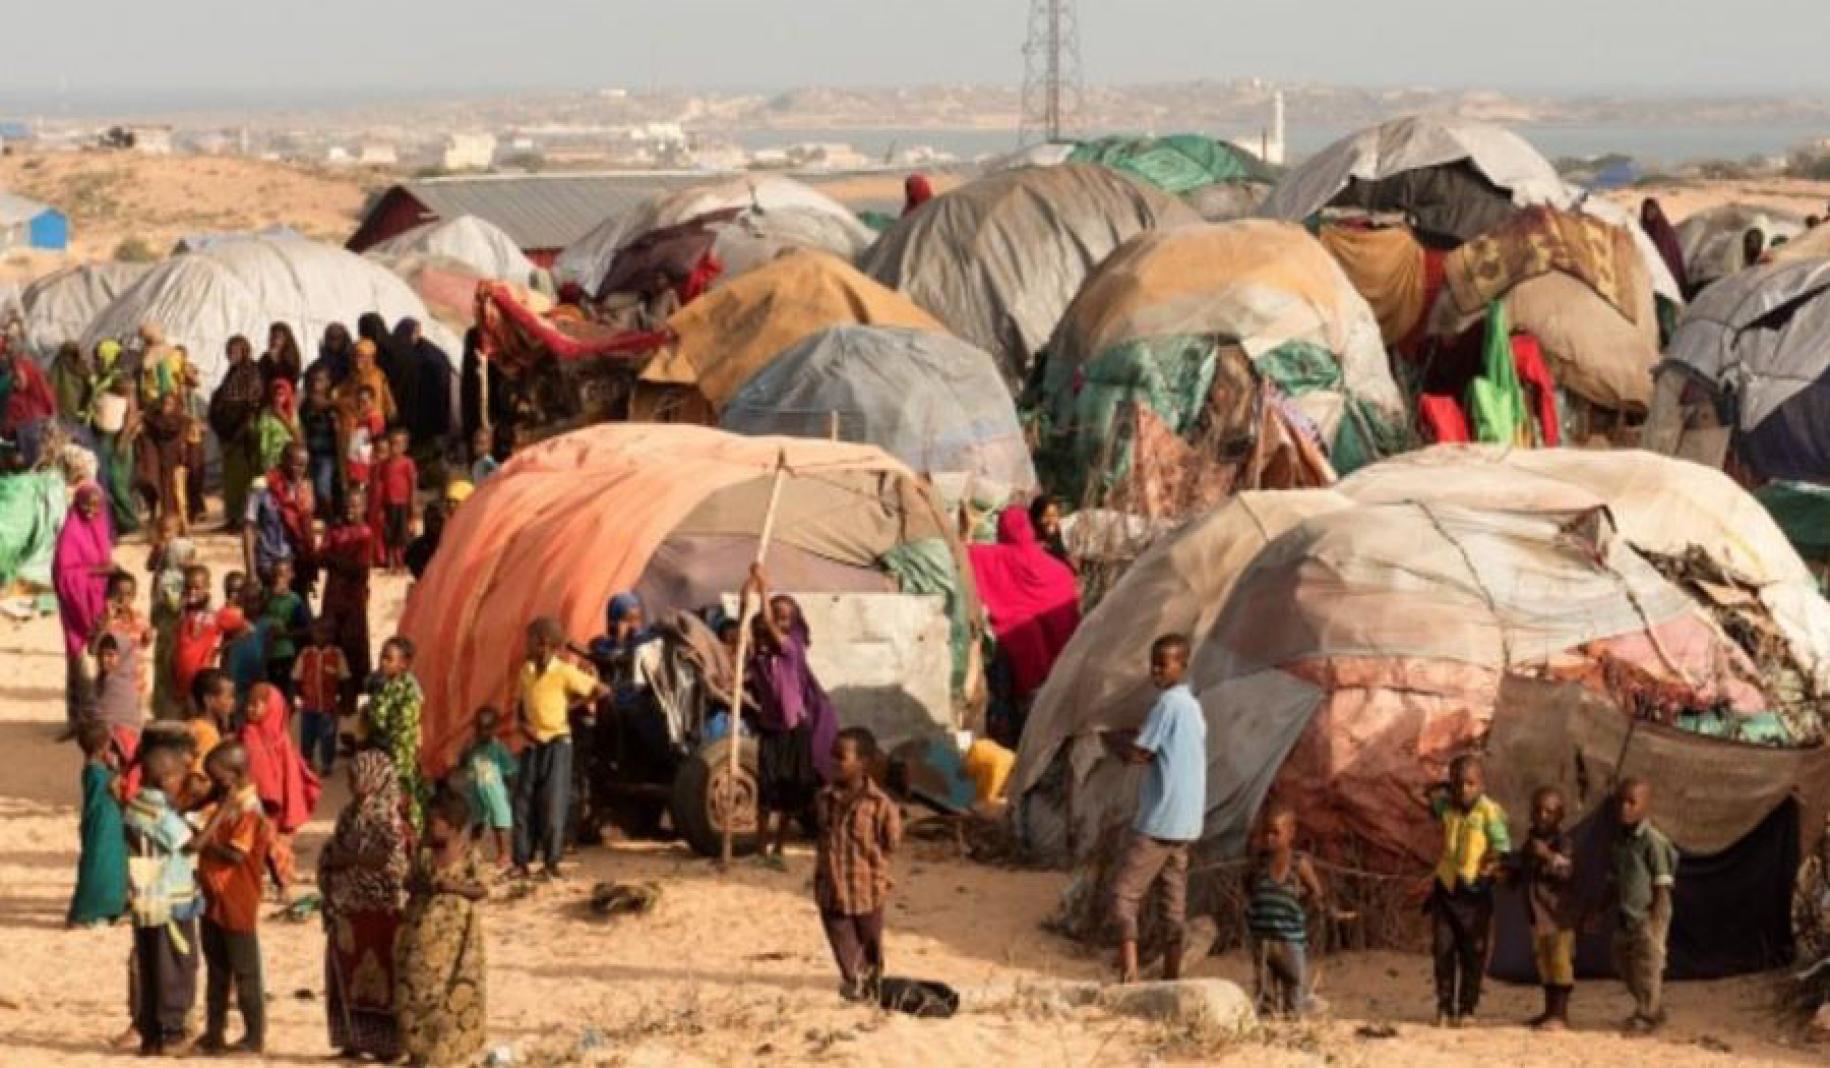 Vista panorámica de un campamento para desplazados internos. Hay gran cantidad de carpas y muchas personas, incluyendo hombres, mujeres, niños y niñas.